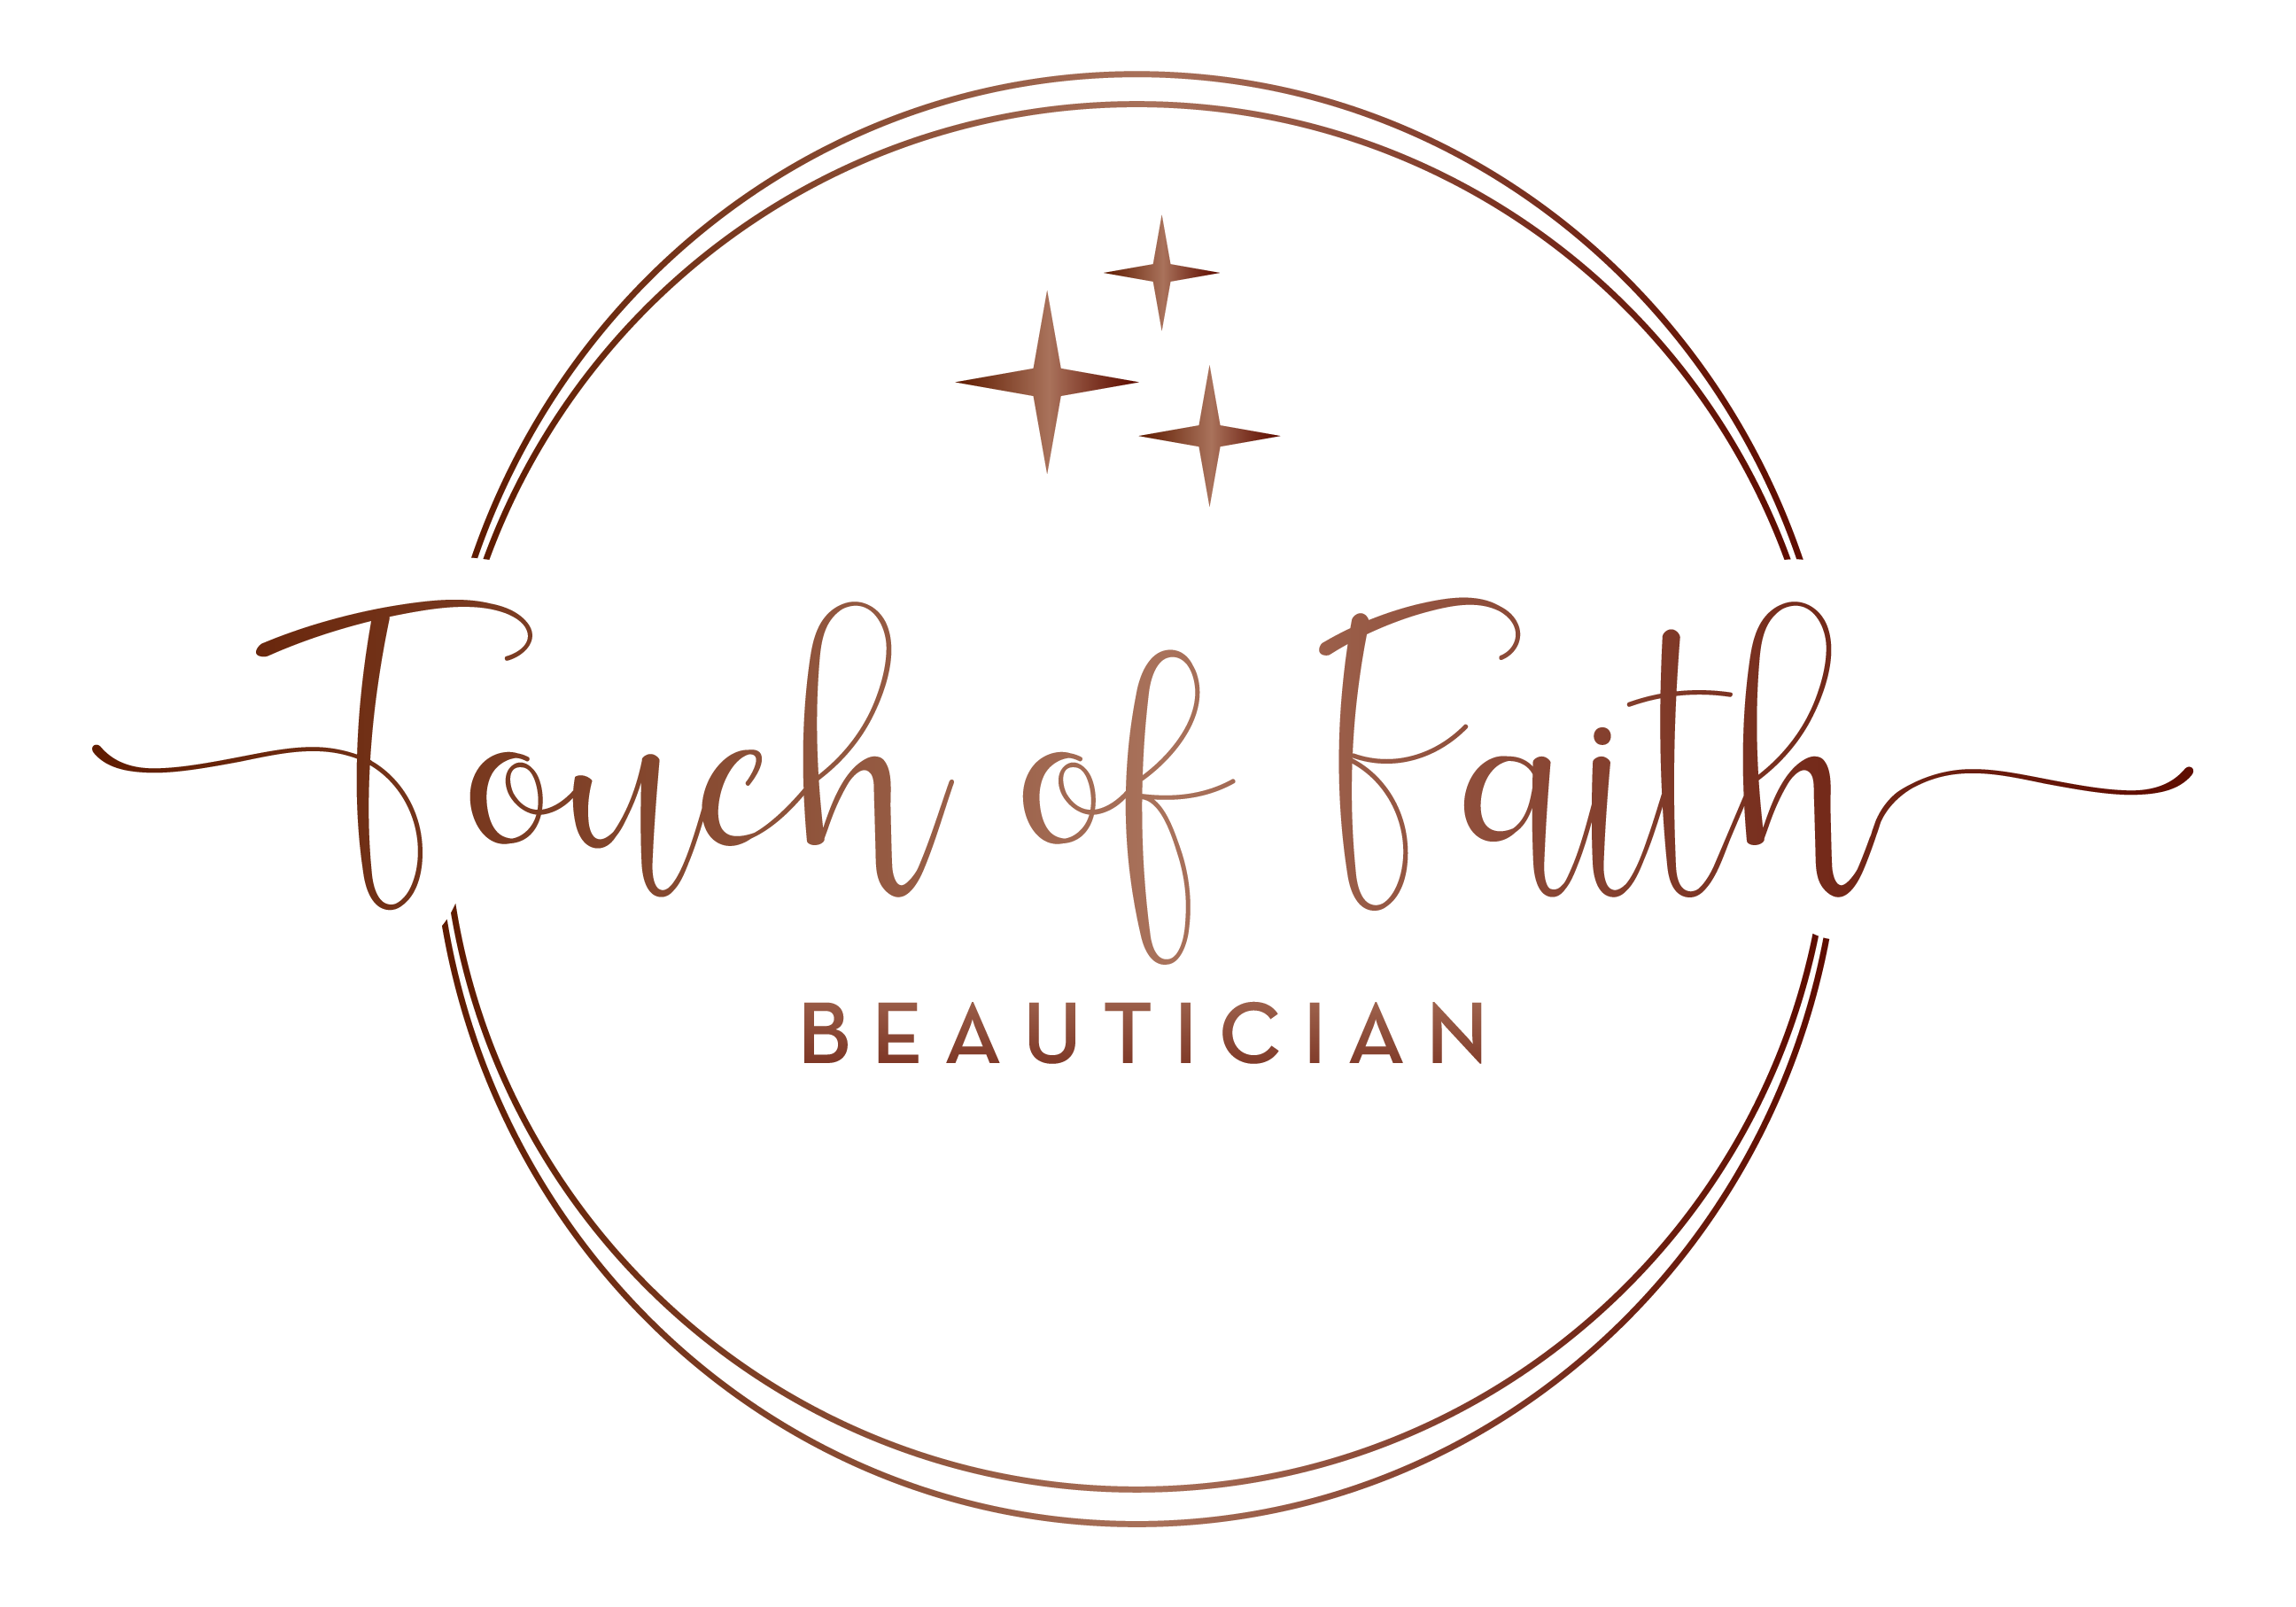 Touch of Faith